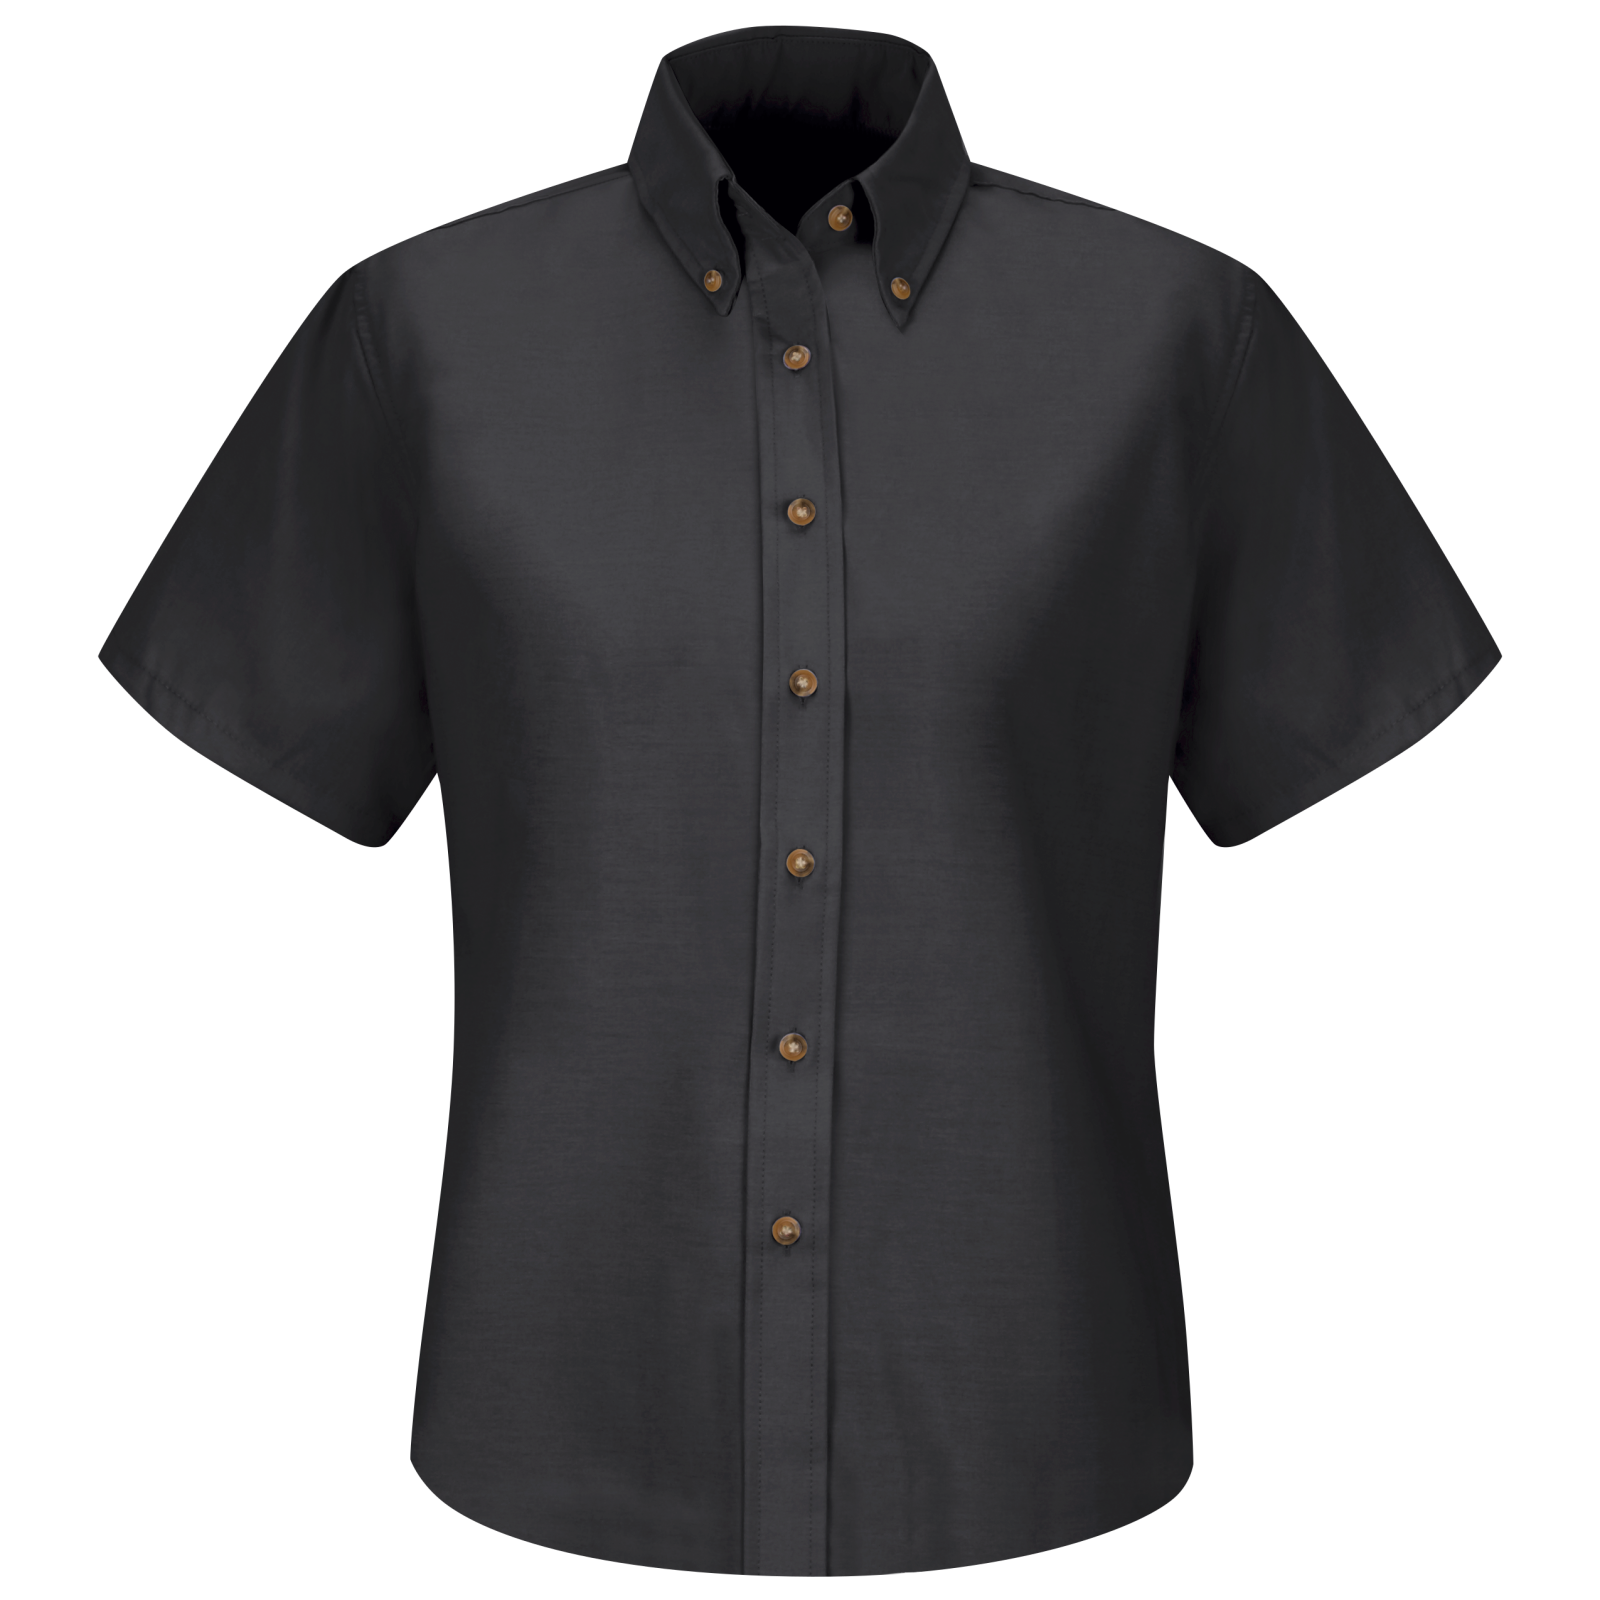 dress shirt black buttons